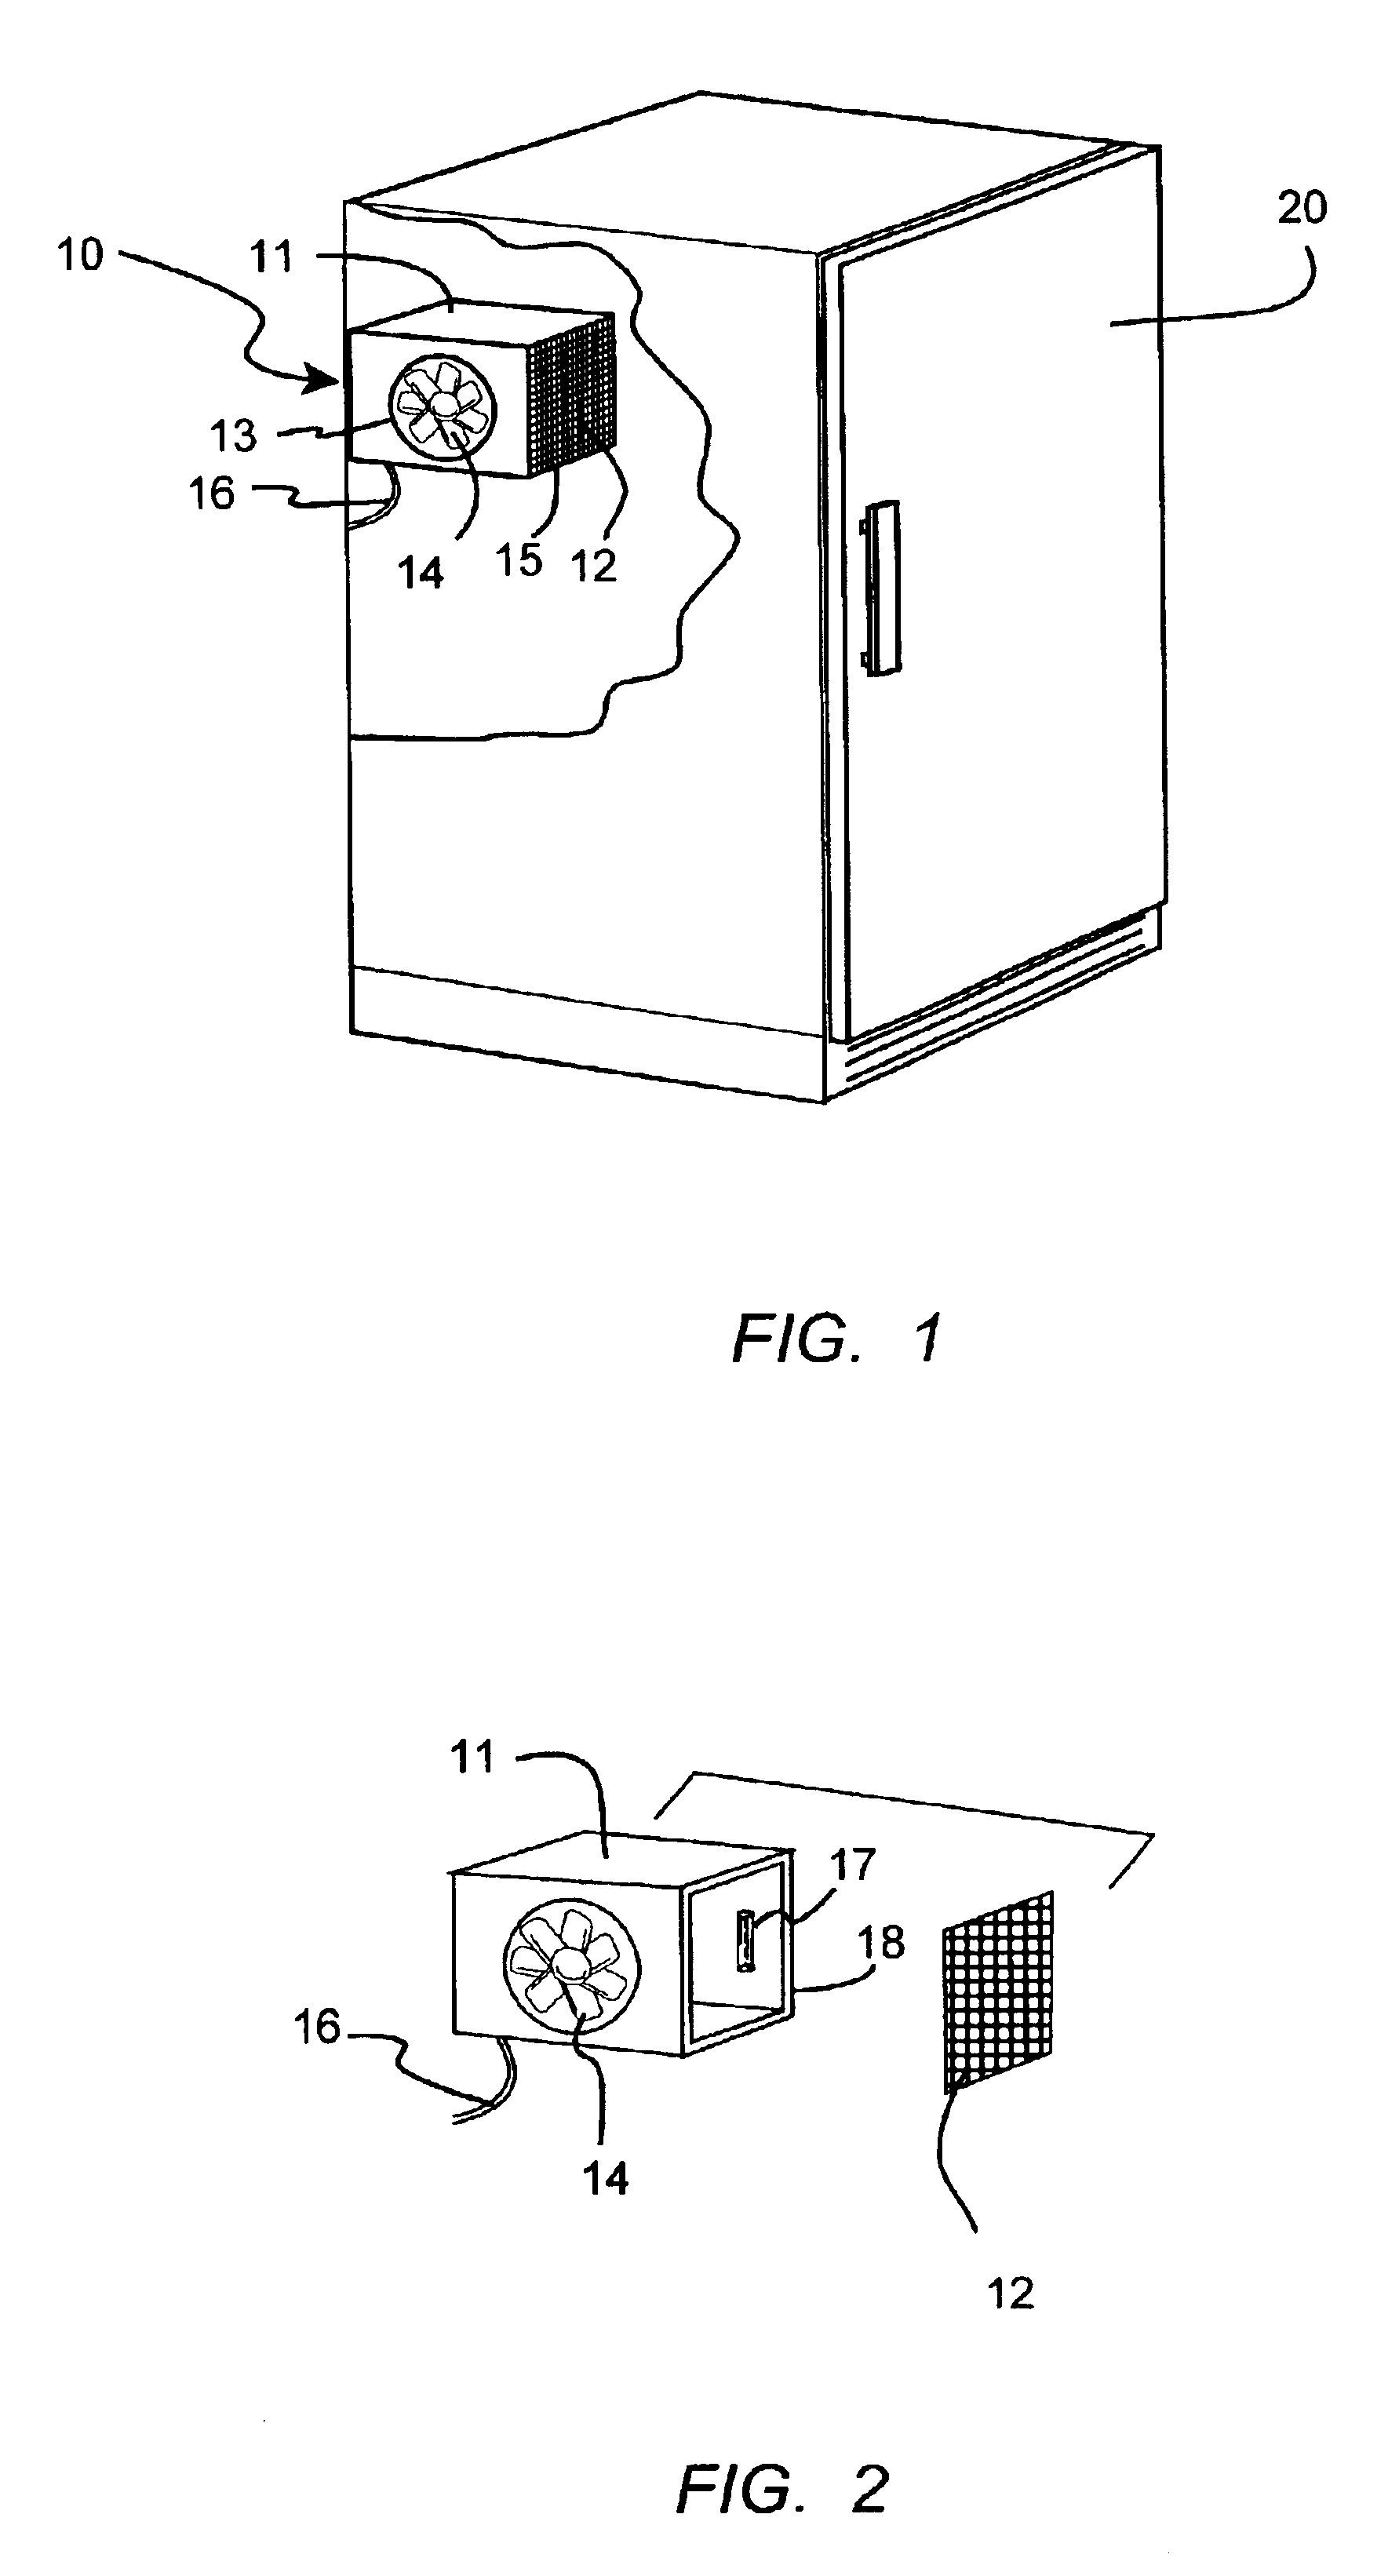 Refrigerator air filtration system